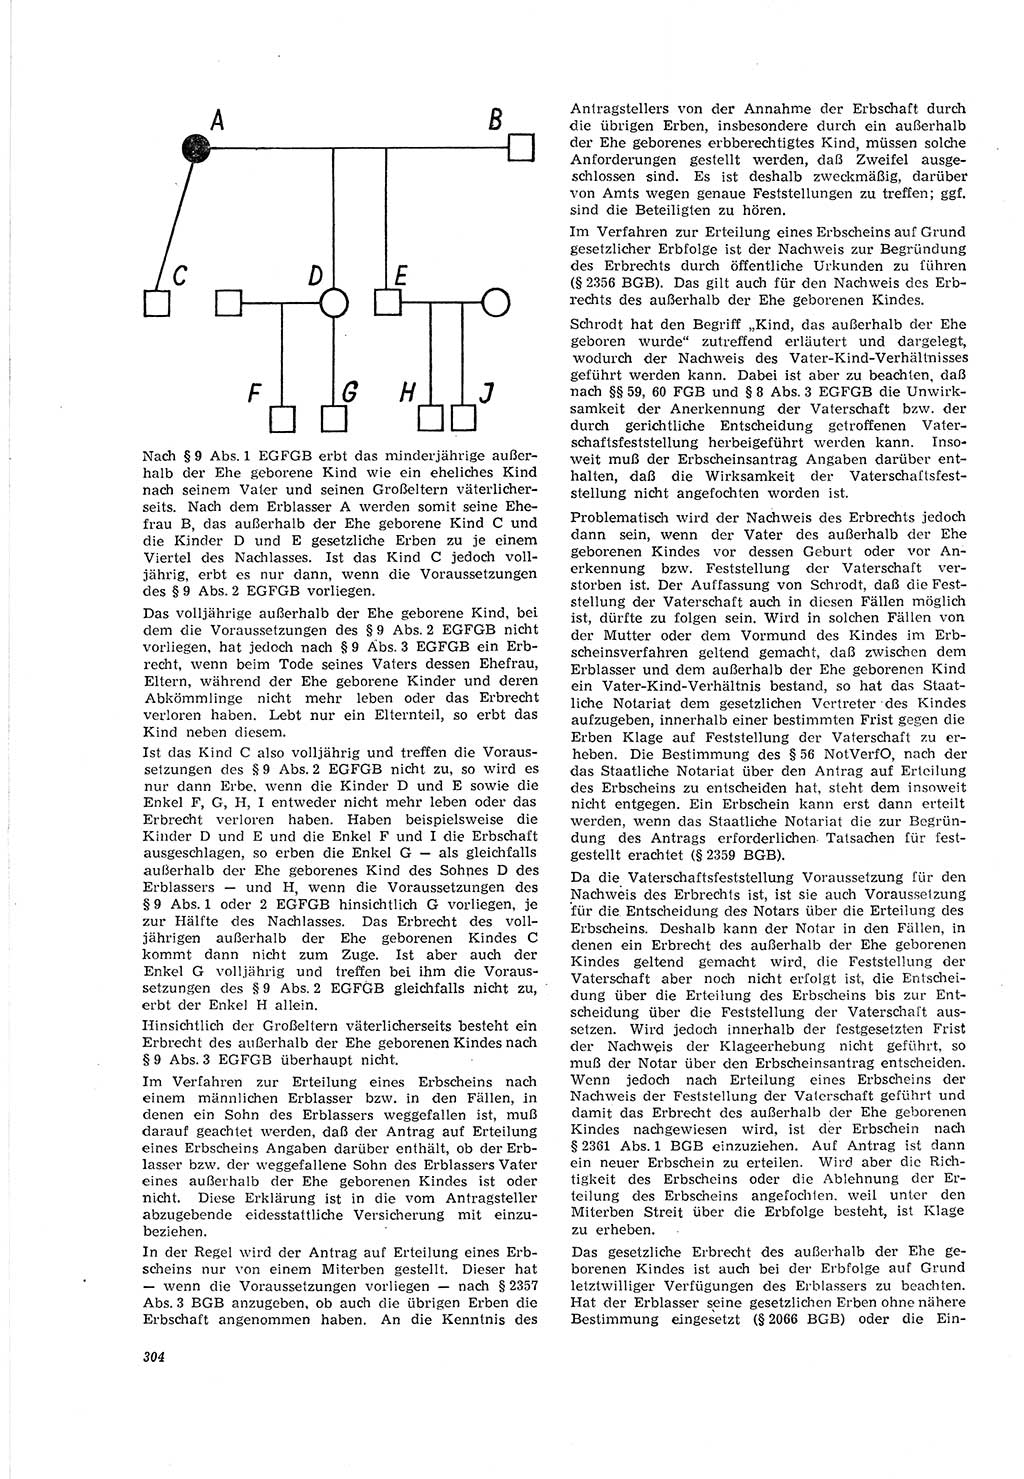 Neue Justiz (NJ), Zeitschrift für Recht und Rechtswissenschaft [Deutsche Demokratische Republik (DDR)], 20. Jahrgang 1966, Seite 304 (NJ DDR 1966, S. 304)